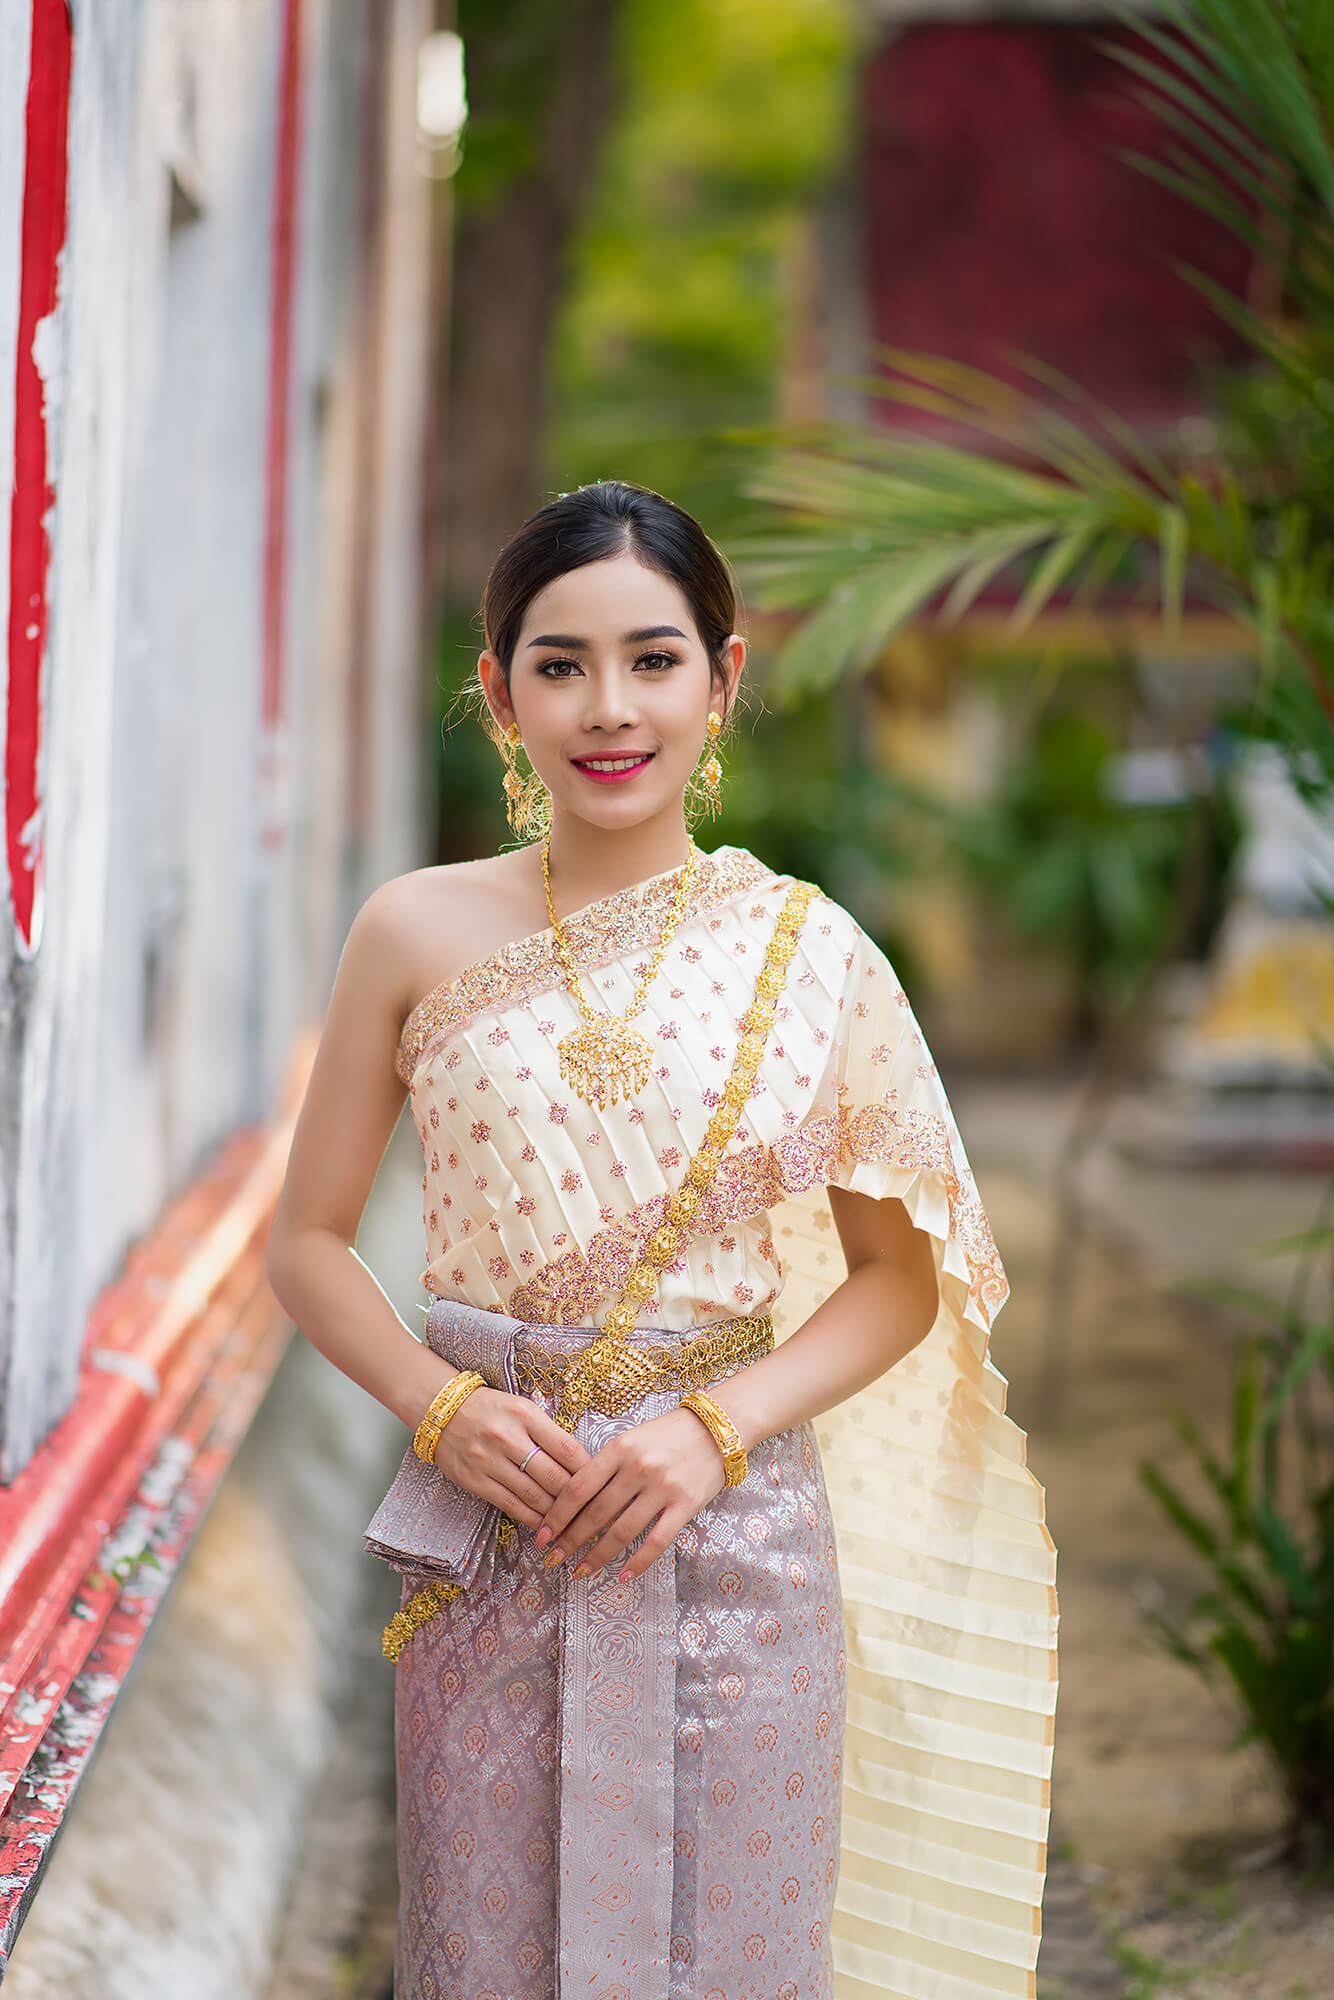 Phuket Traditional Thai Clothing Phuket Photographer 